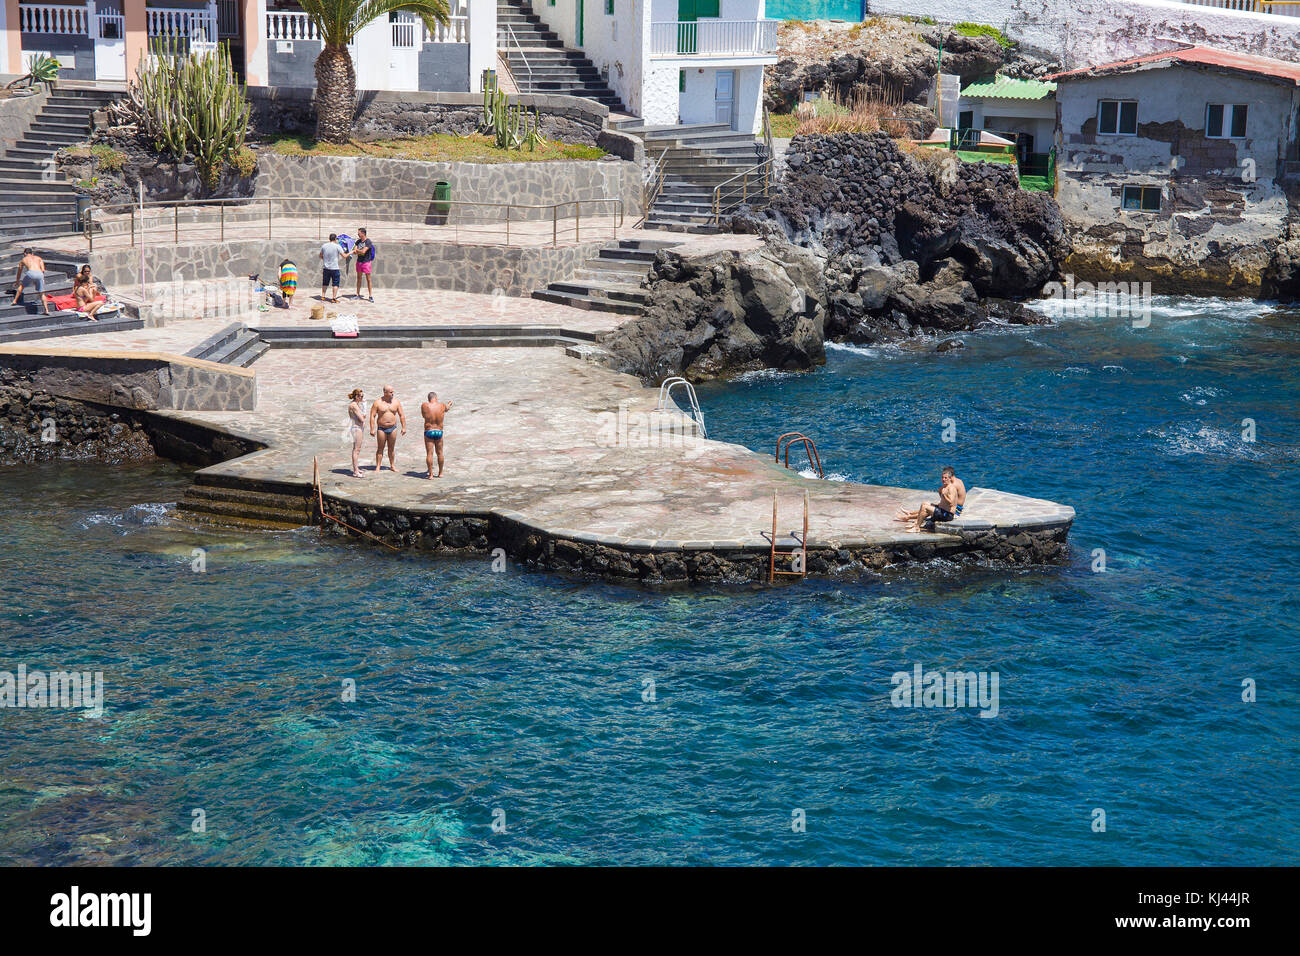 Badewanne Plattform an dem kleinen Fischerdorf El Tablado, Teneriffa, Kanarische Inseln, Spanien Stockfoto